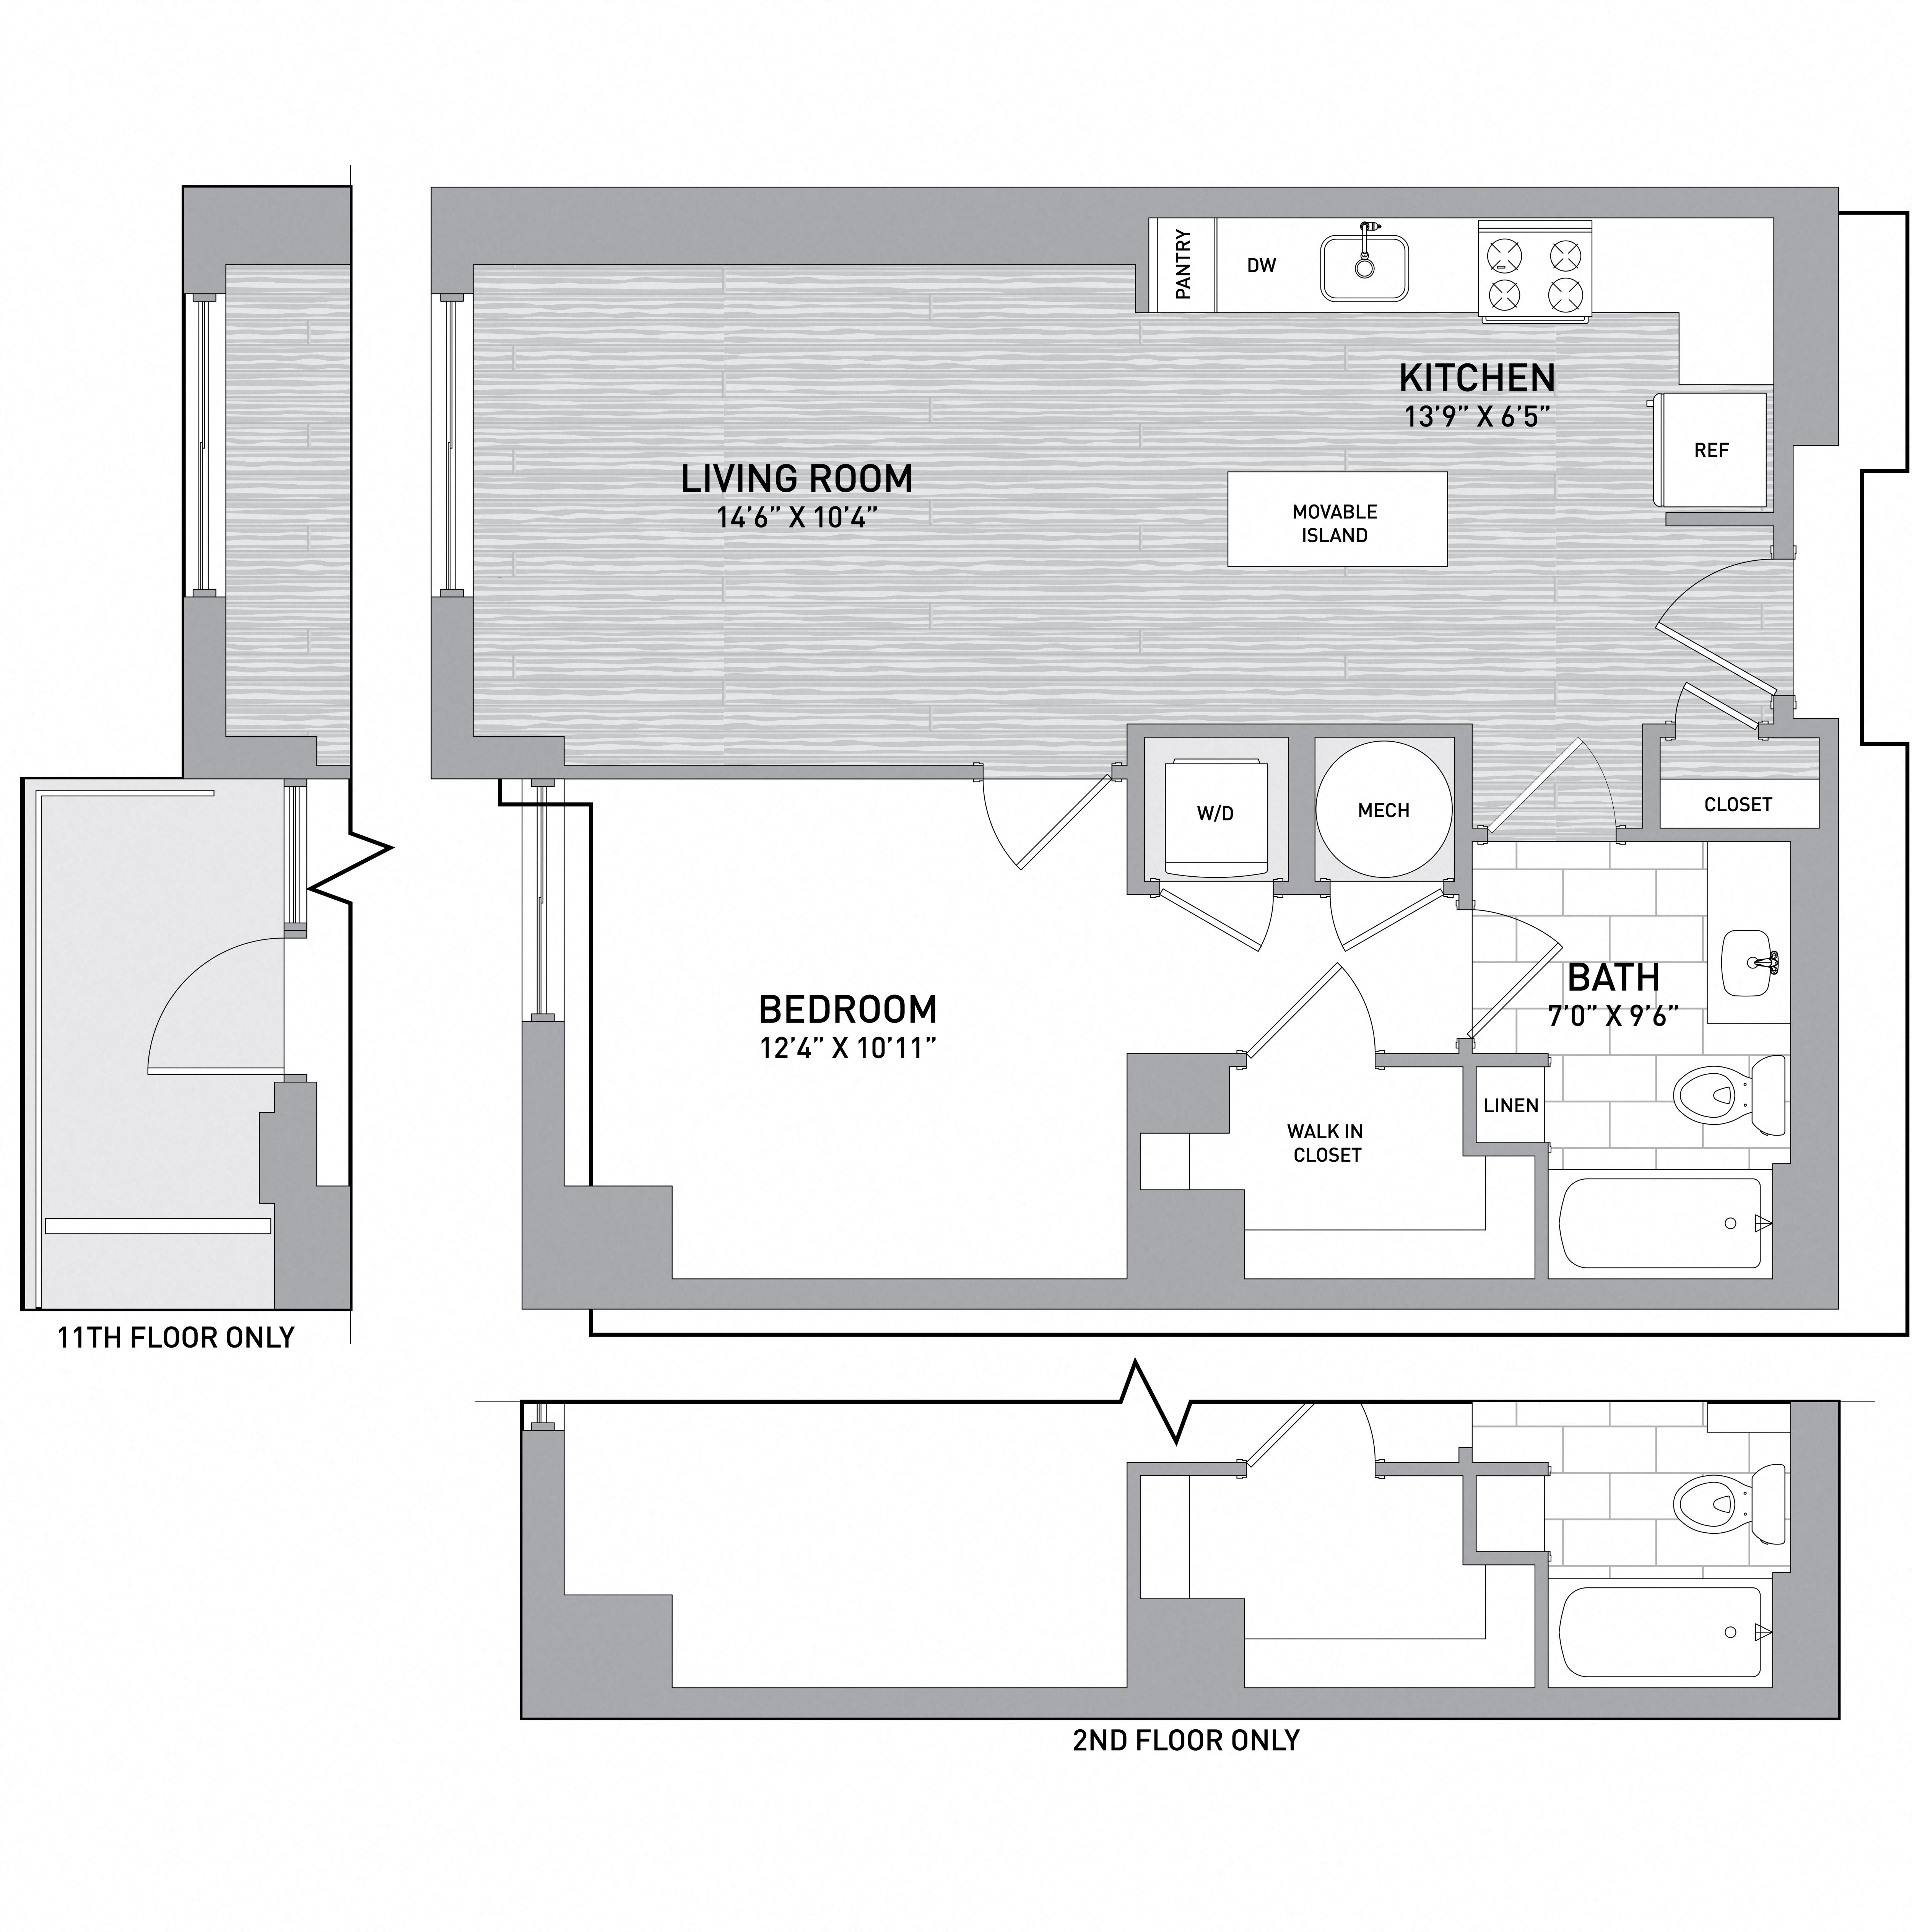 Floorplan Image of unit 151-0904